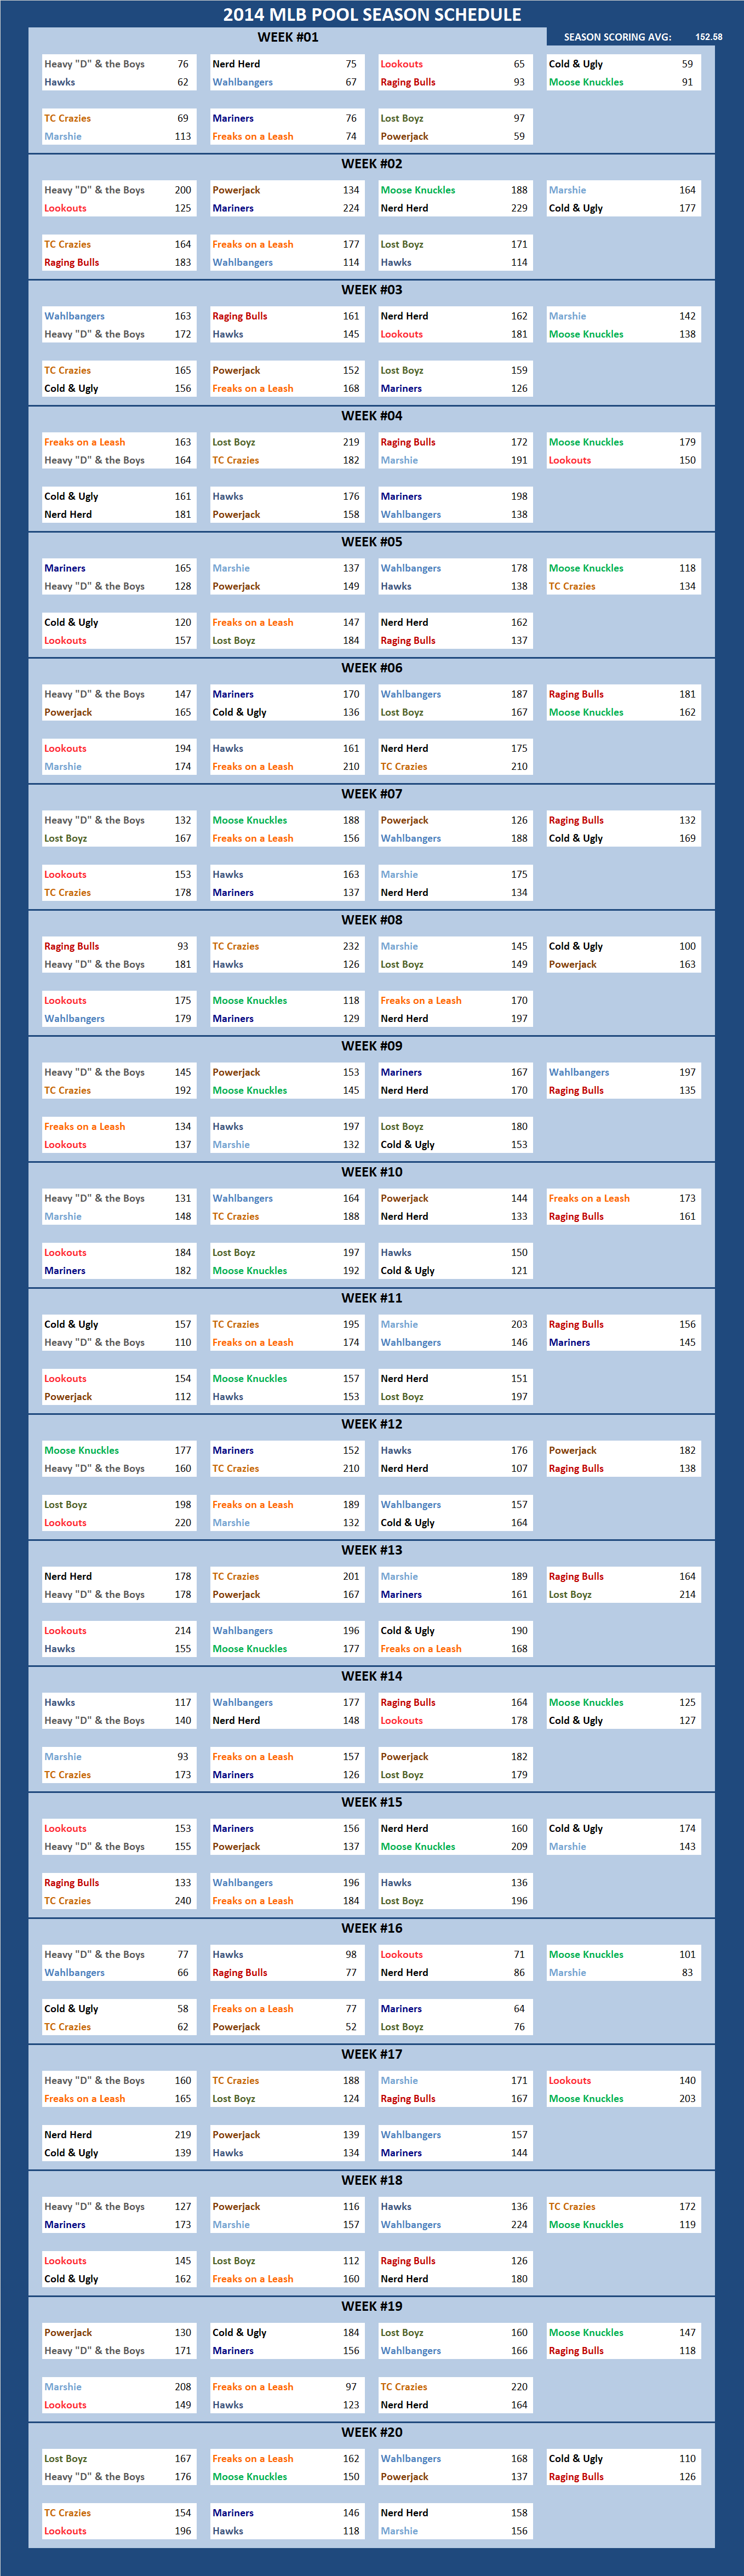 2014 Major League Baseball Pool Season Schedule